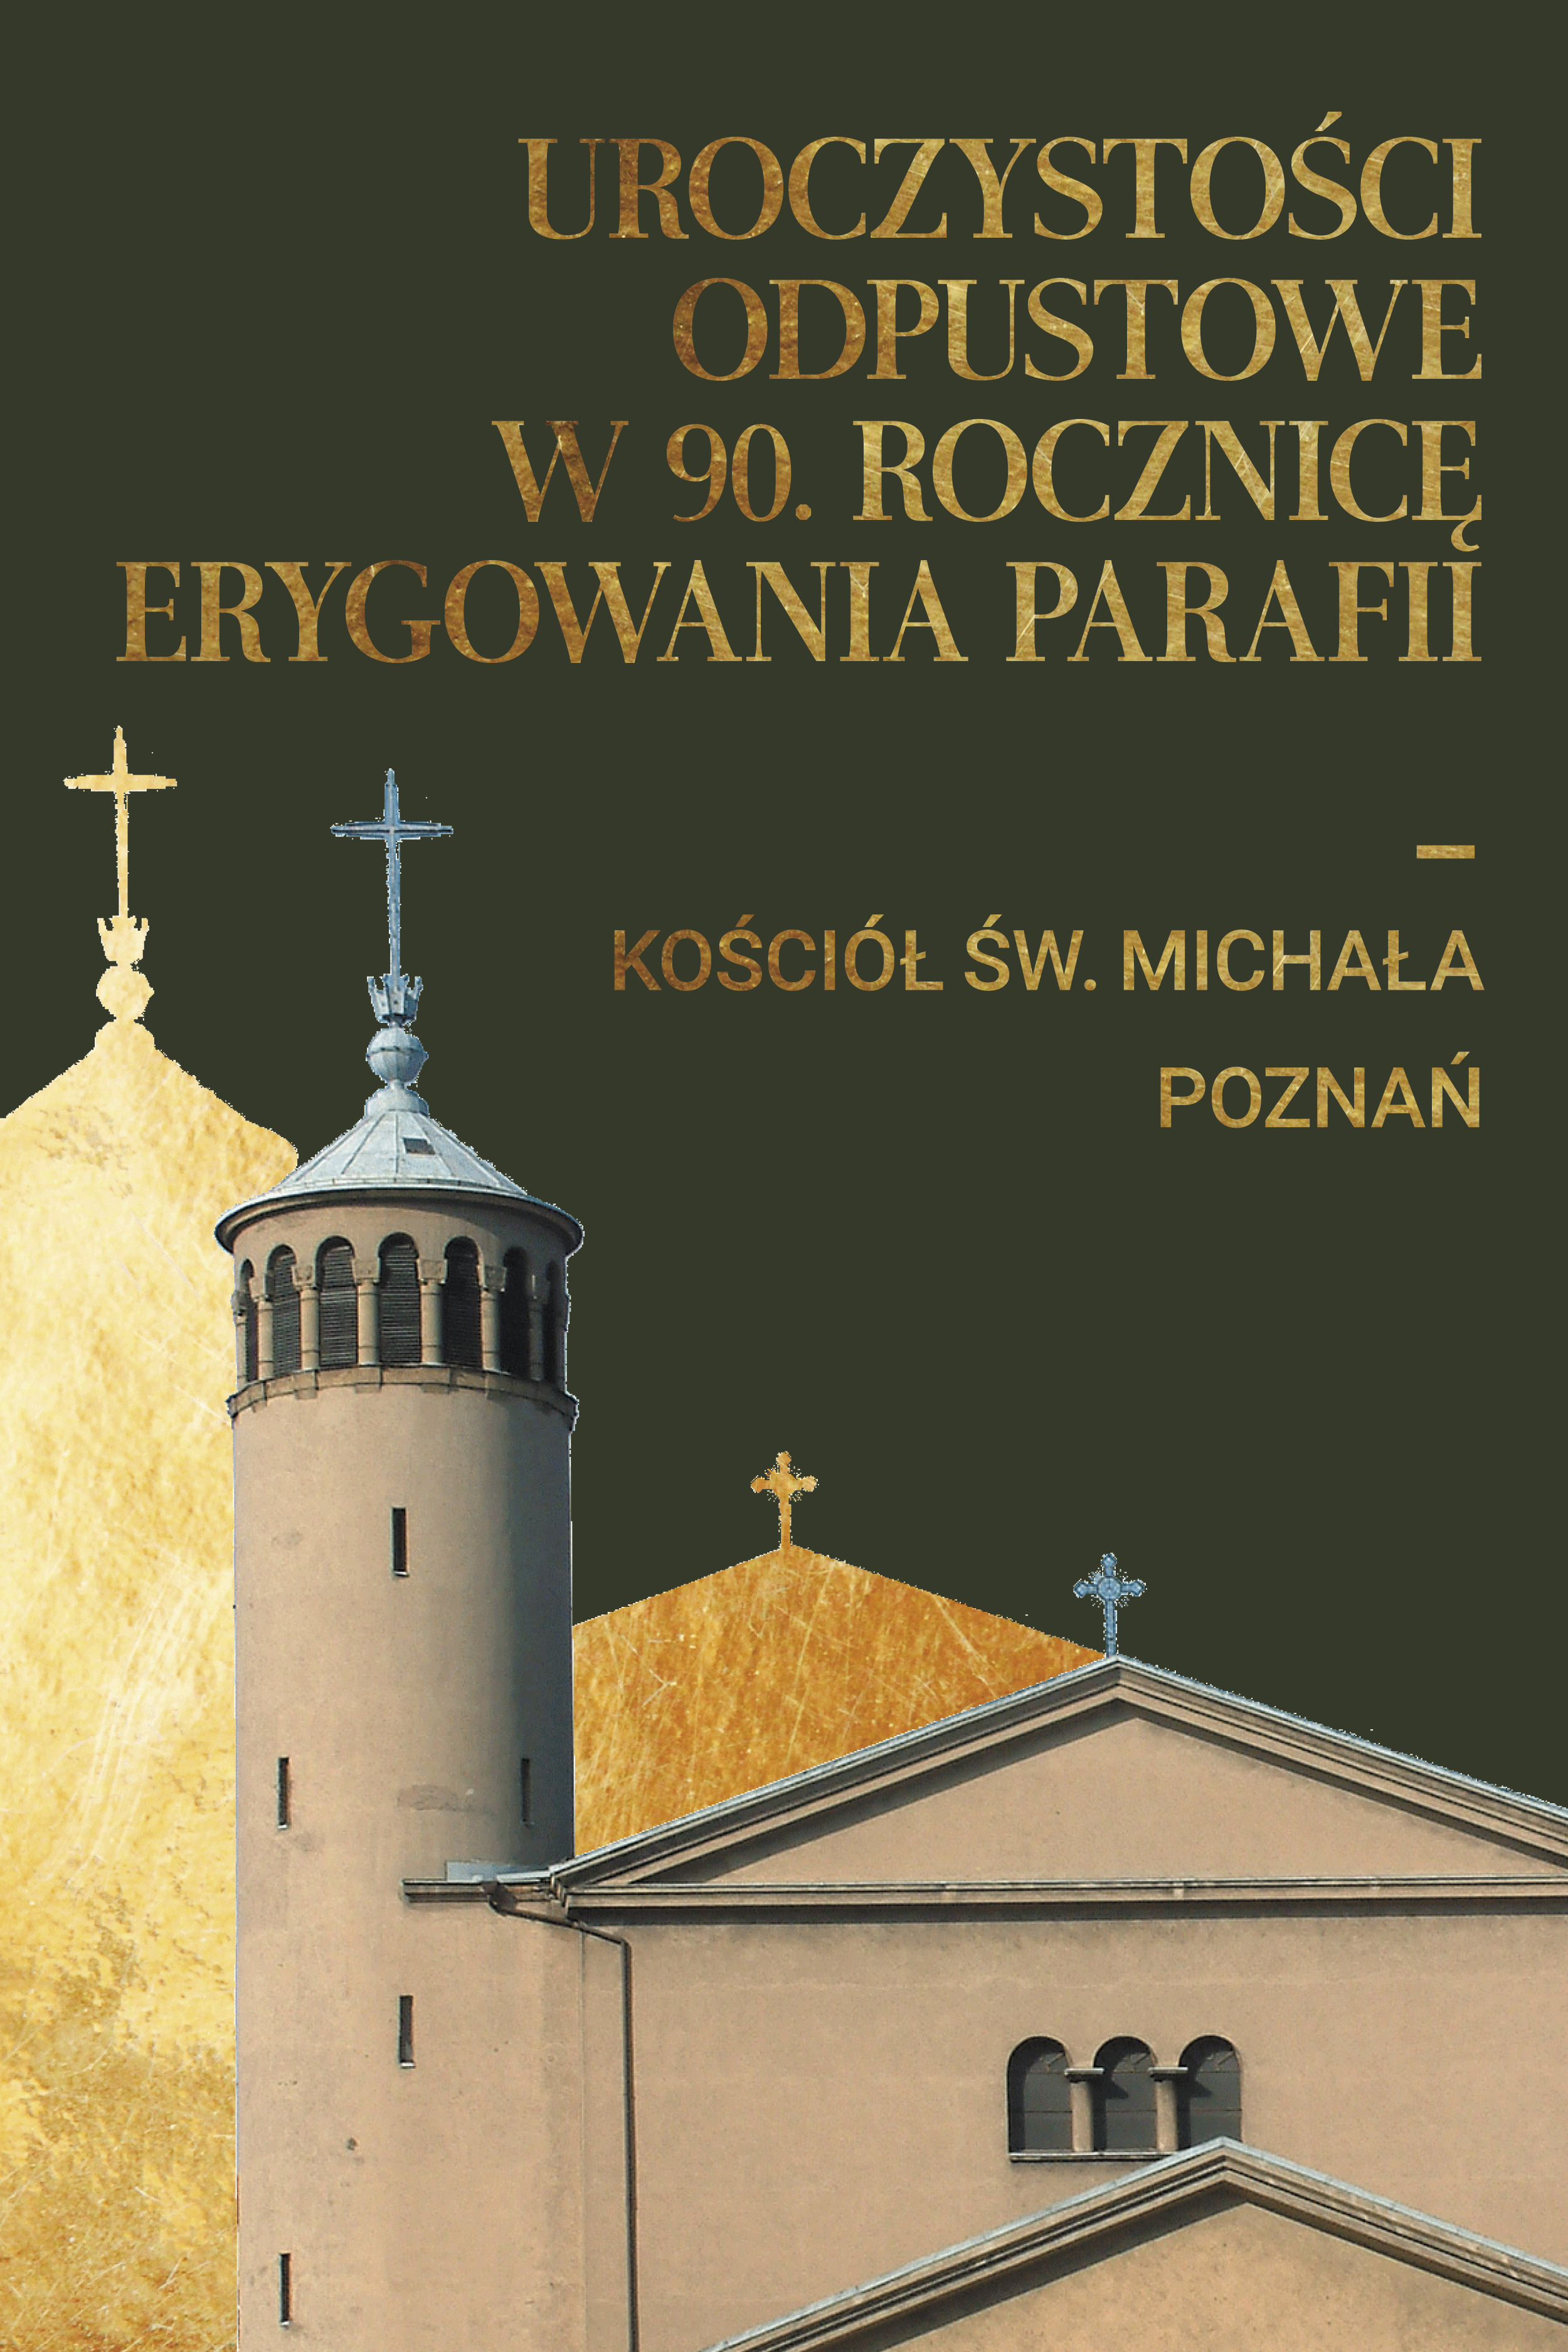 Uroczystości odpustowe w 90. rocznicę erygowania parafii św. Michała Archanioła w Poznaniu